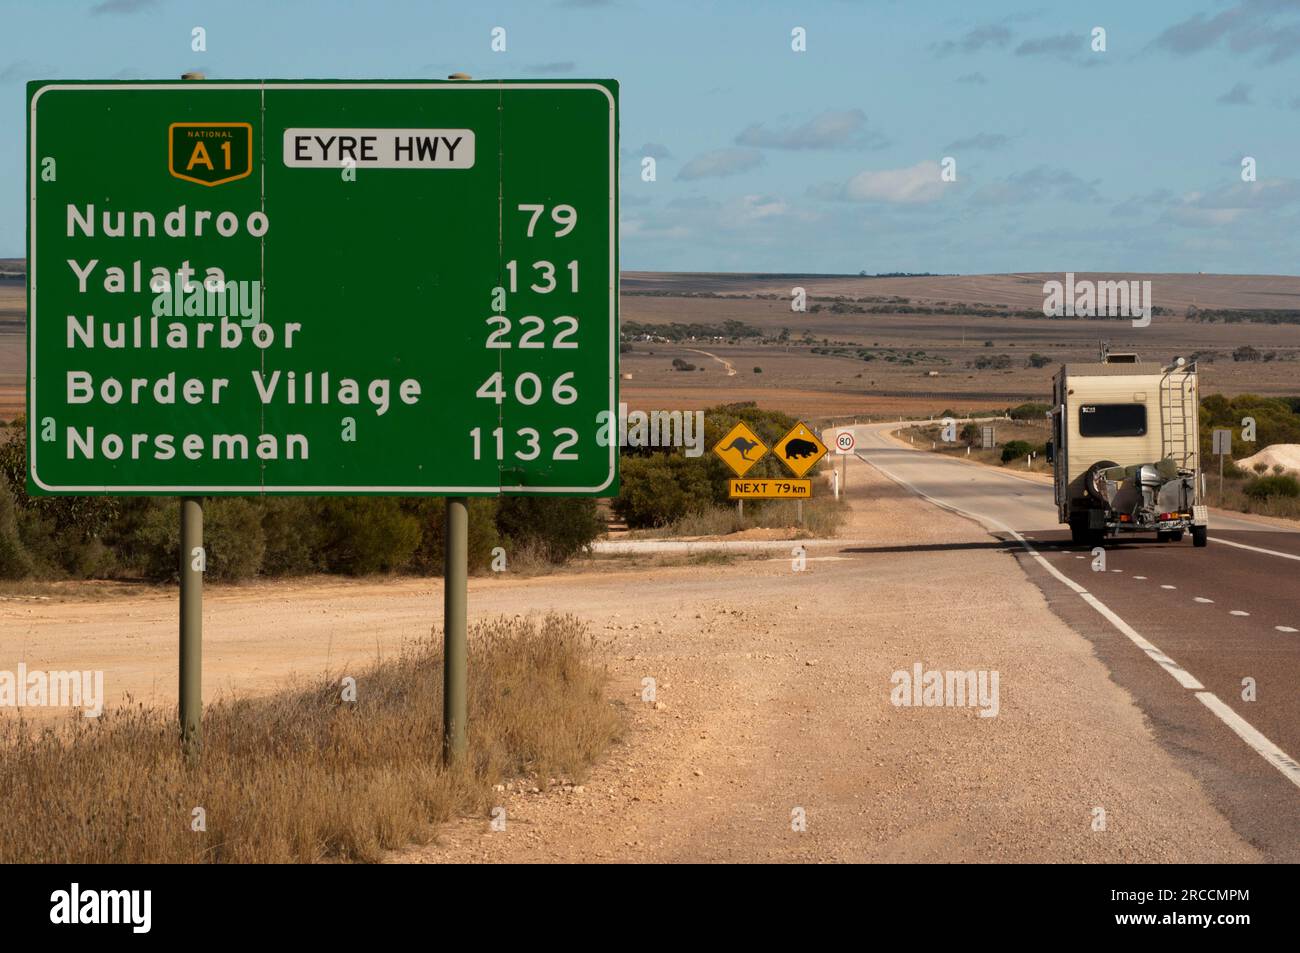 Panneaux indiquant les distances au début de l'Eyre Highway A1 qui traverse la plaine de Nullarbor en Australie Banque D'Images